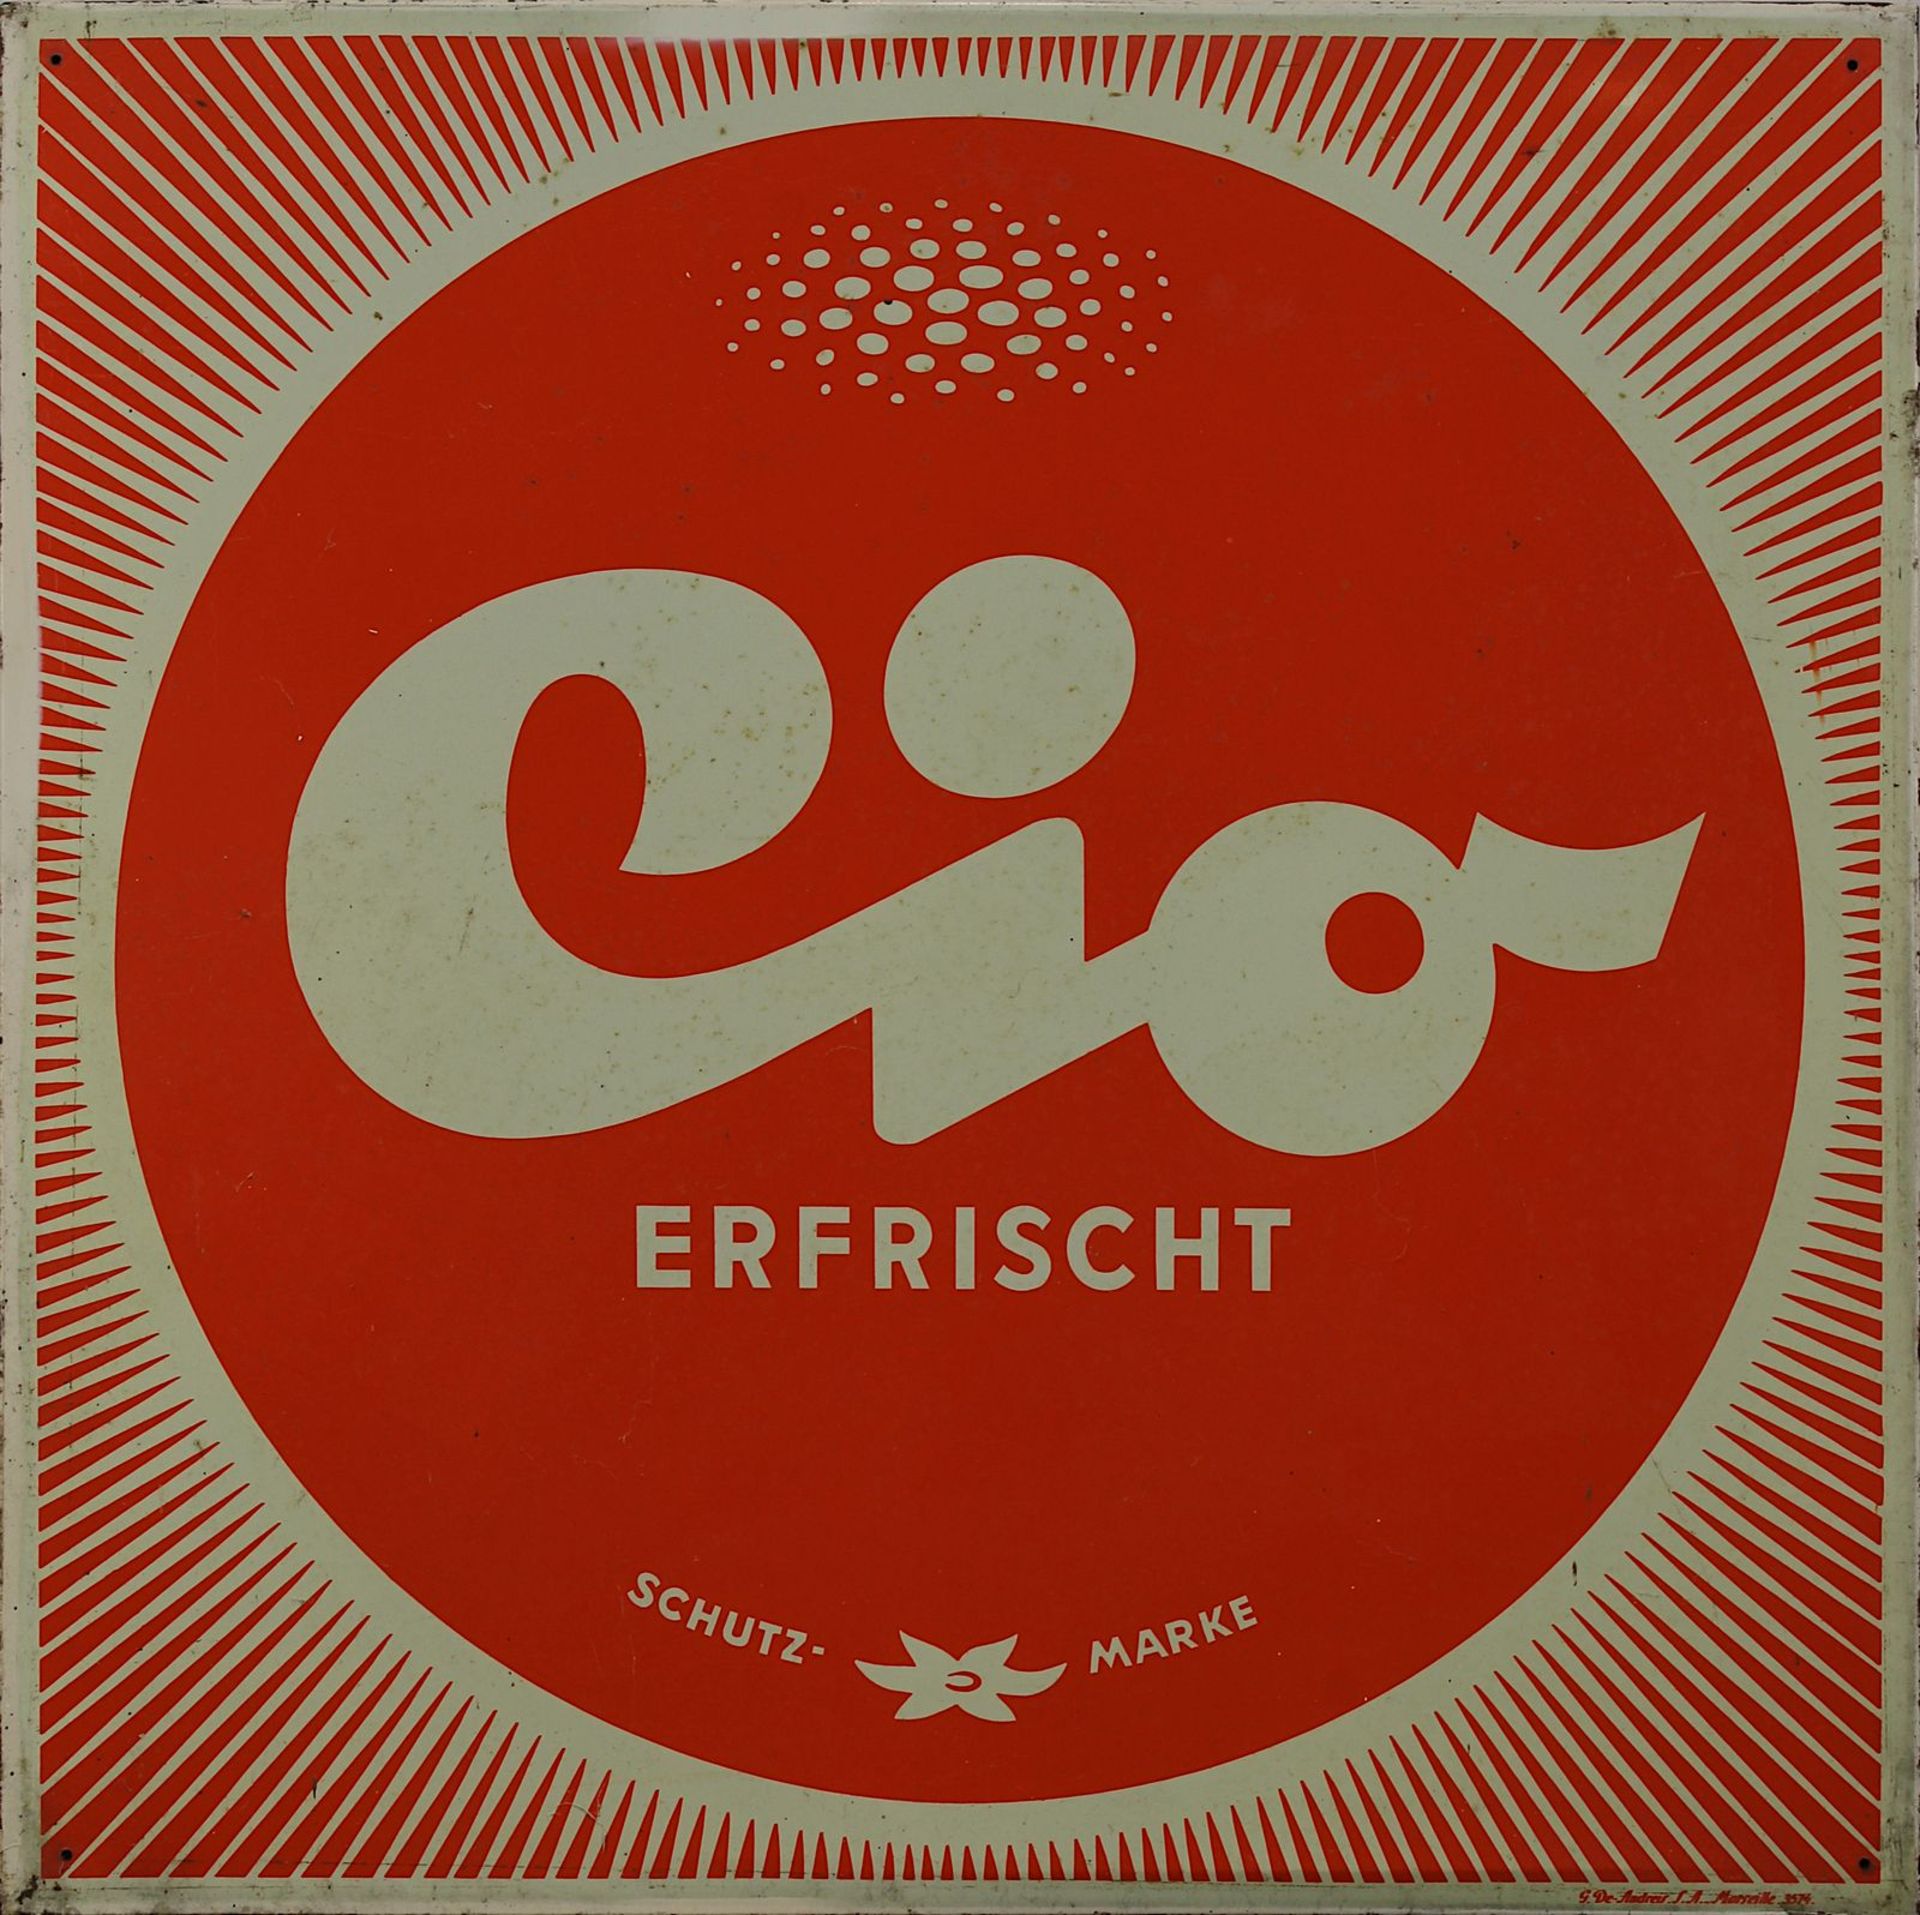 Blechschild - Werbeschild für Erfrischungsgetränke von CIO, Saarland um 1960er